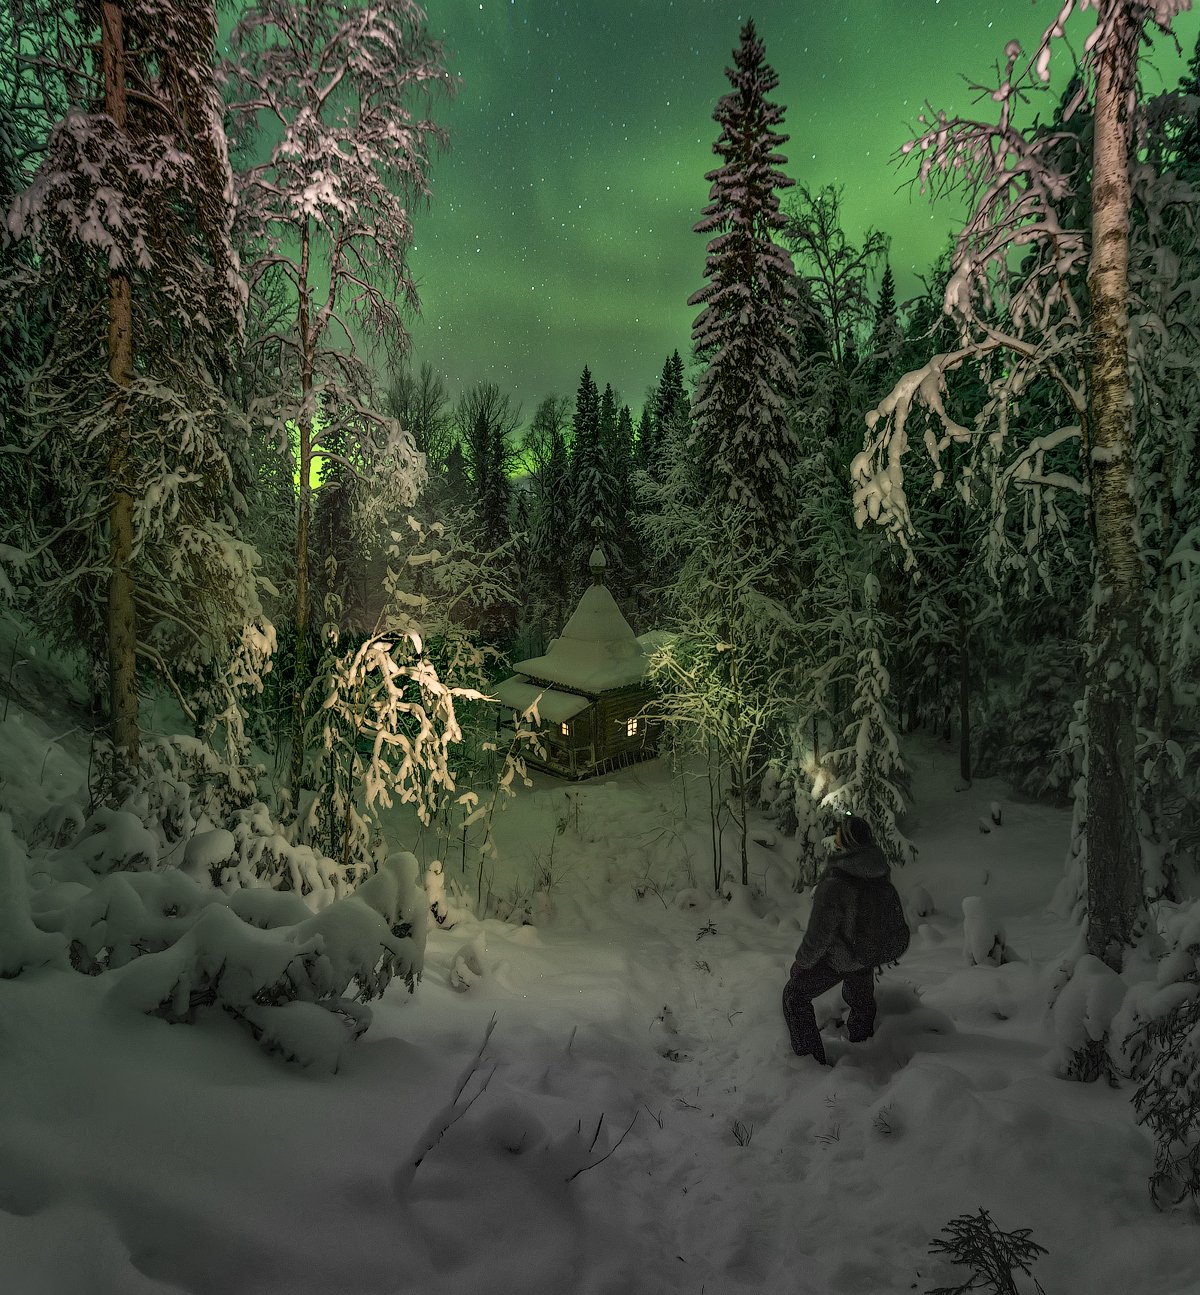 архангельская обасть, ночное фото, лес, русский север, северное сияние, Михаил Карпов